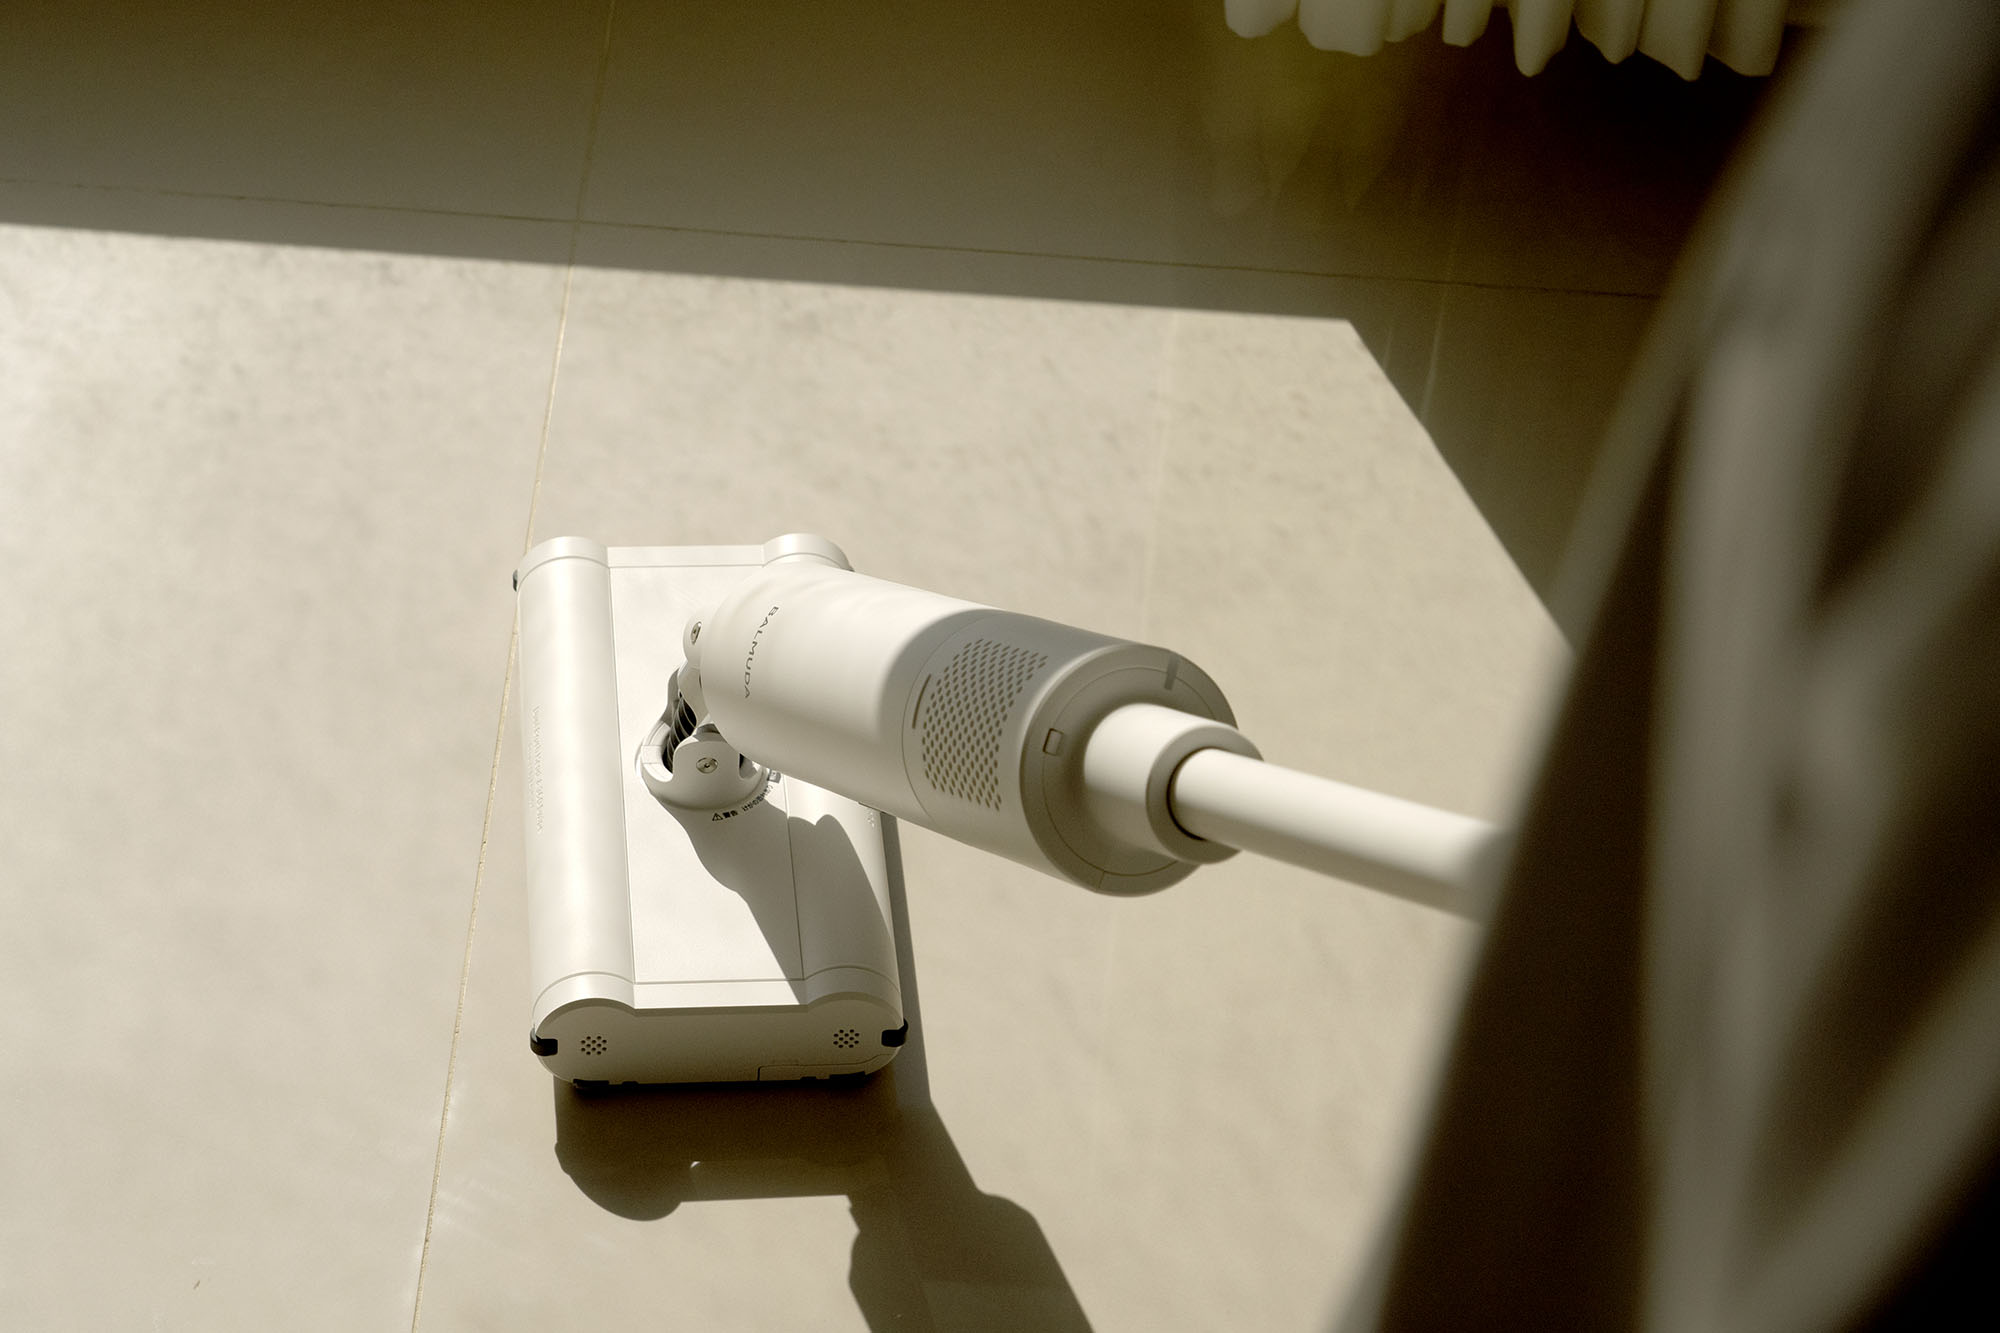 居家最喜歡的白，是BALMUDA The Cleaner 無線吸塵器的白，讓日子輕鬆保持最舒心的白淨。